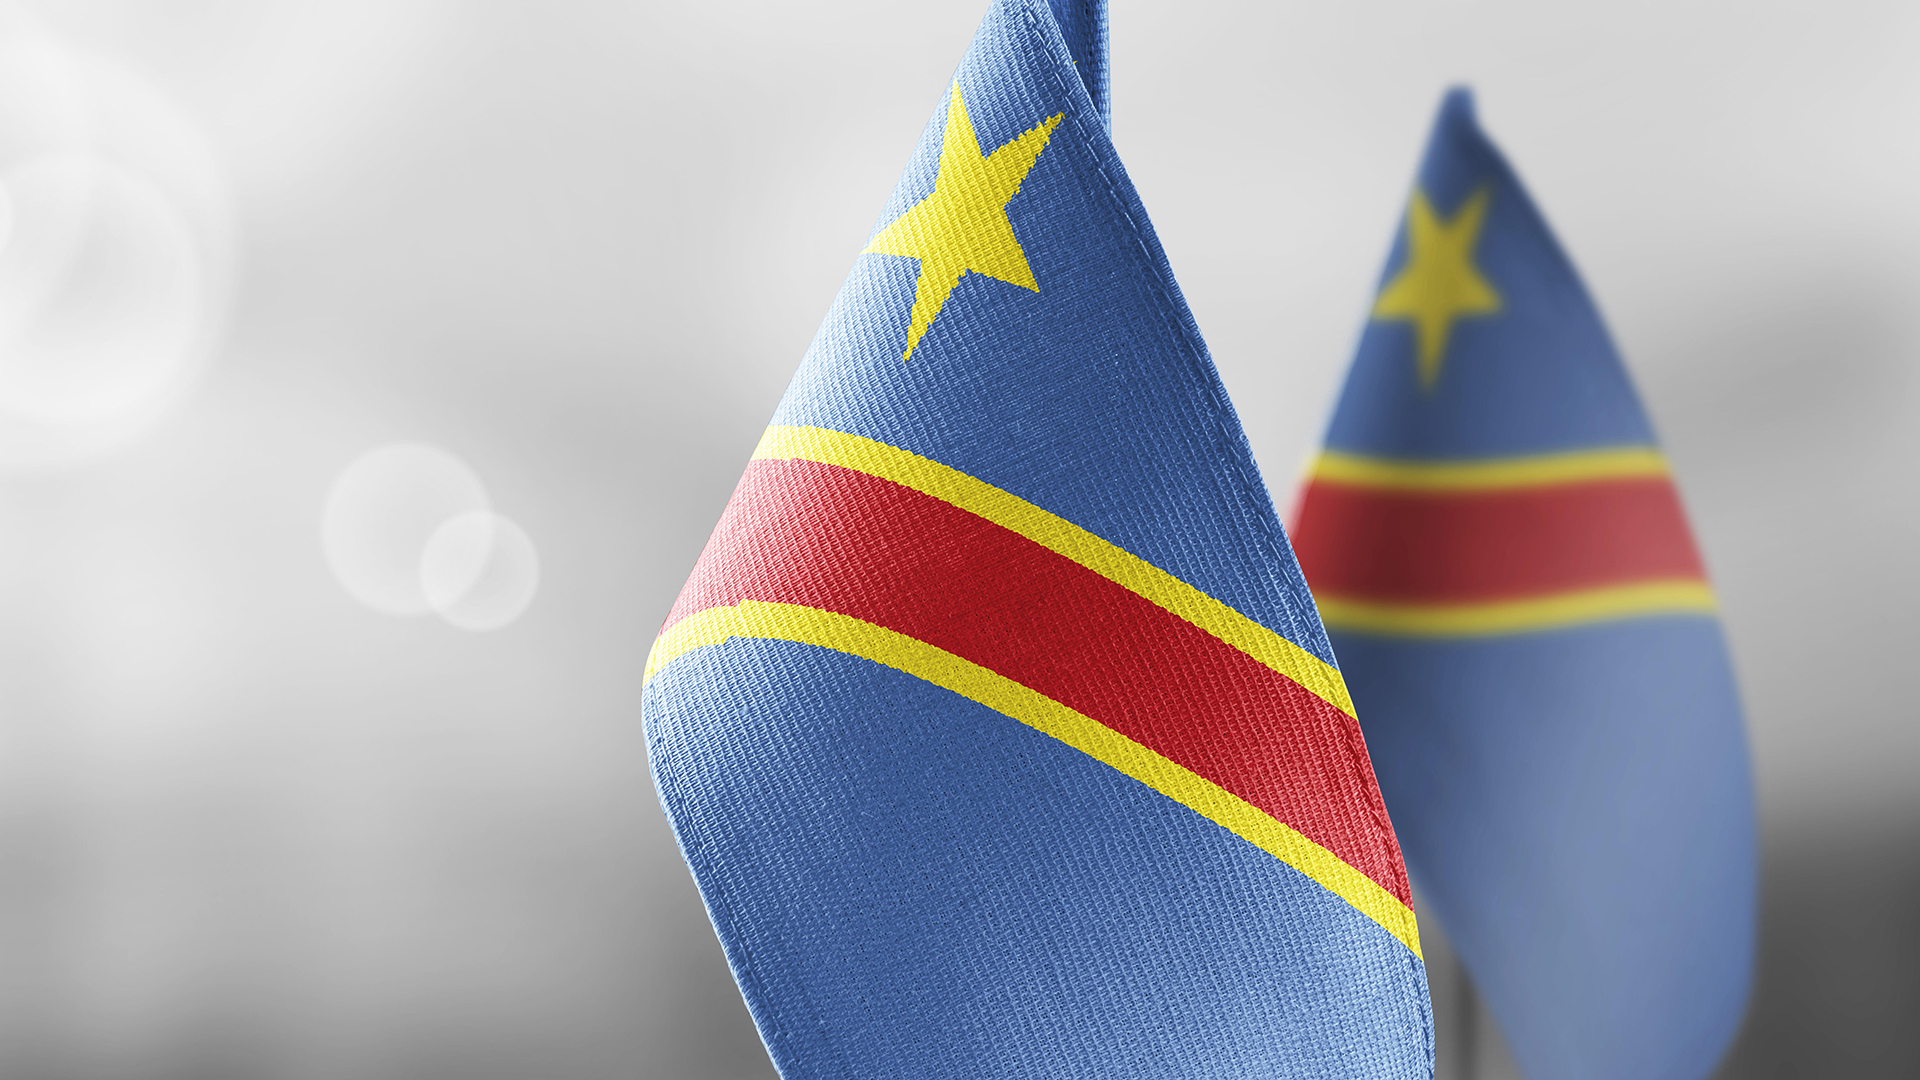 Flagge Demokratische Republik Kongo | picture alliance / Zoonar